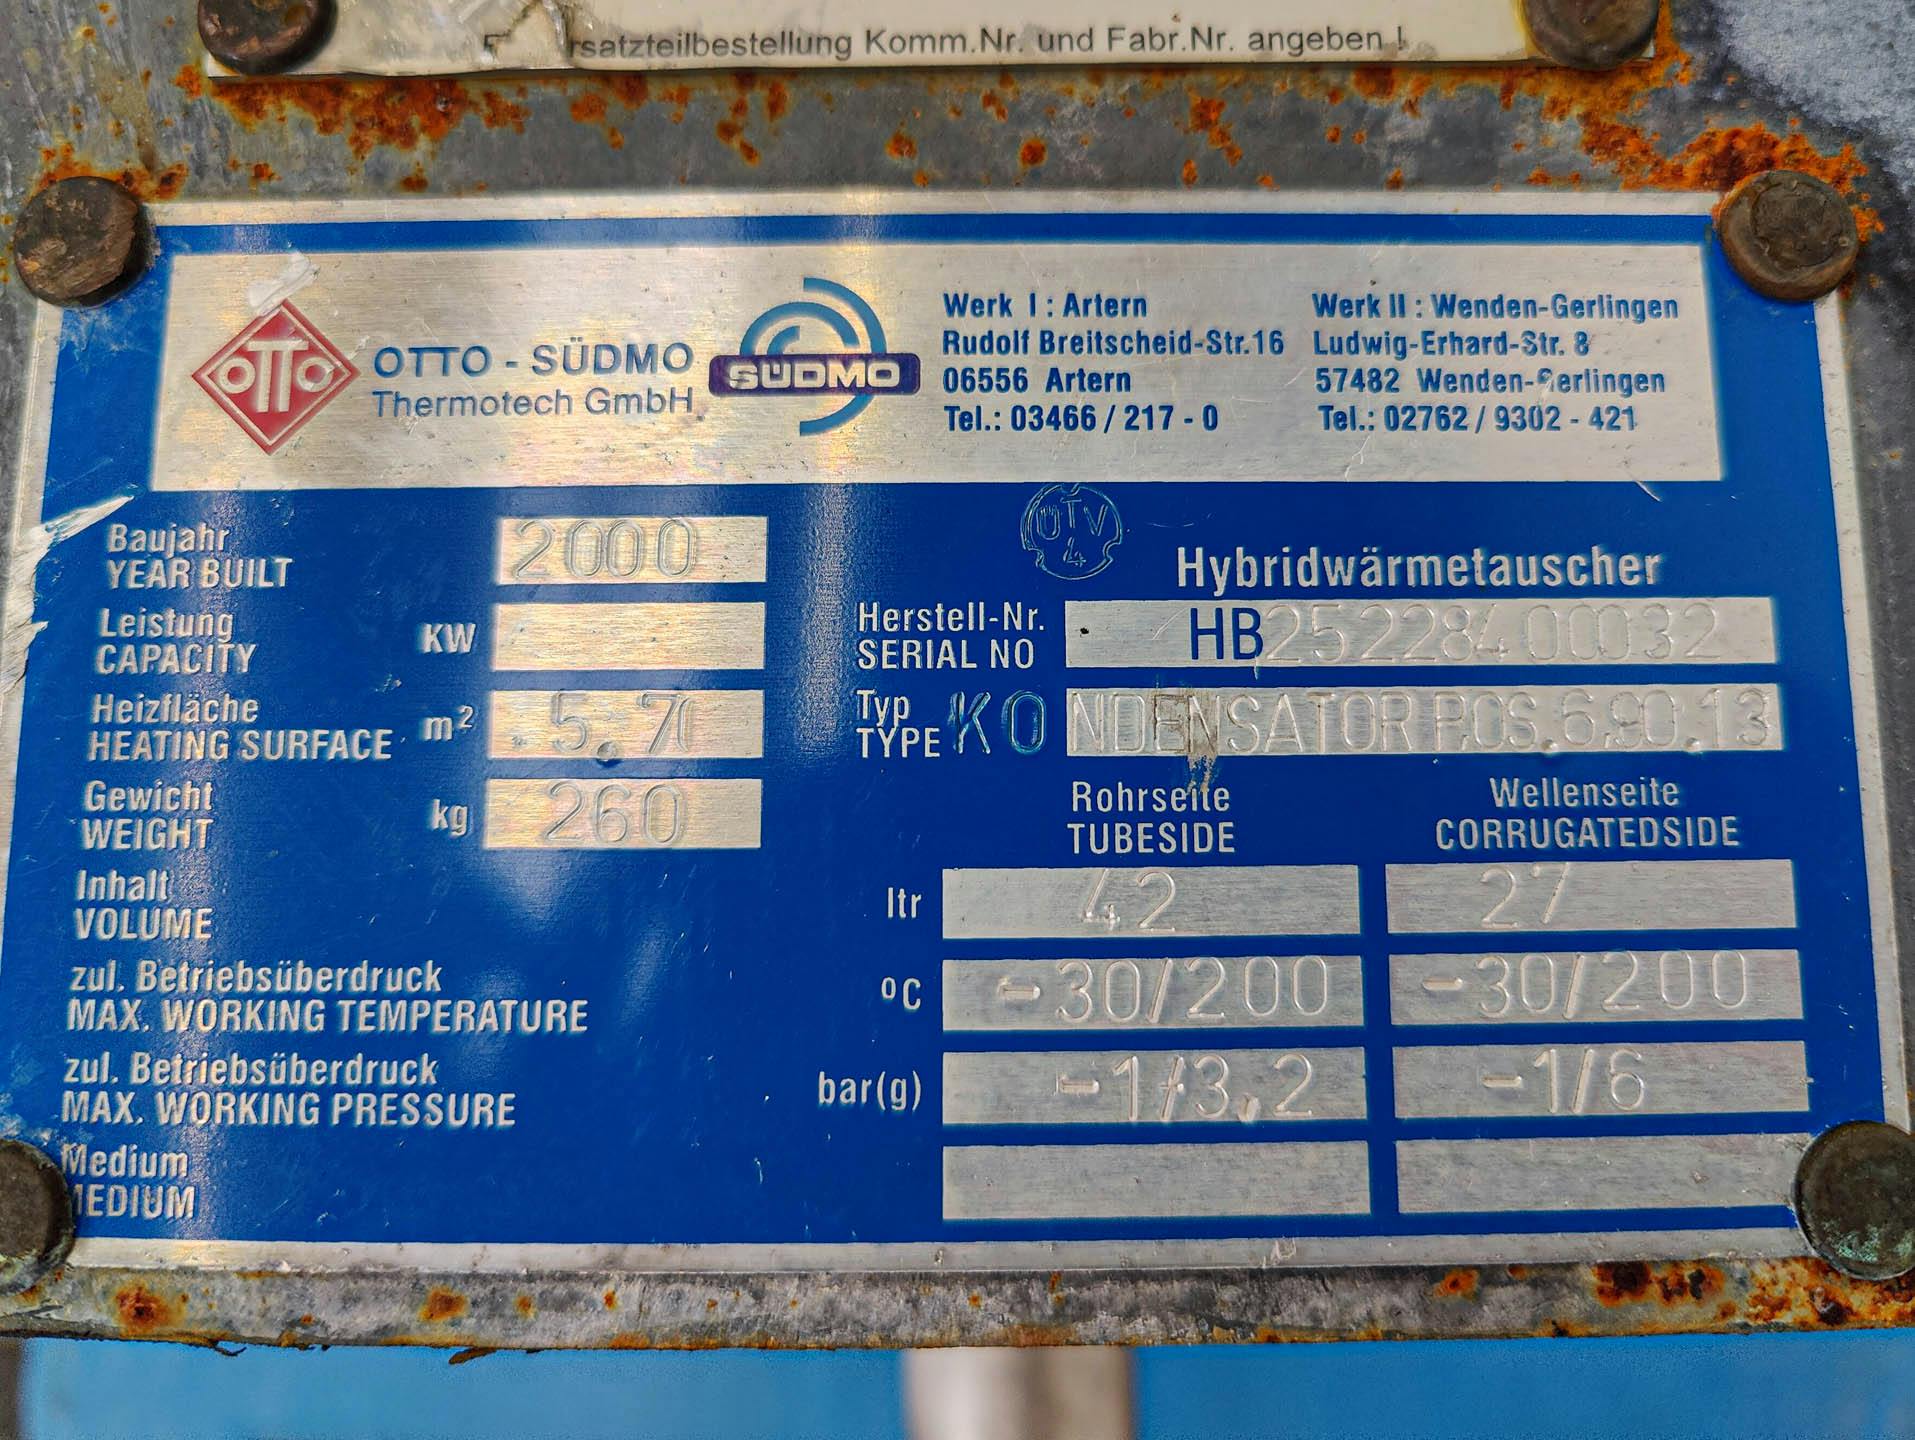 Unex Hybrid; fully welded plate heat exchanger - Plattenwärmetauscher - image 5